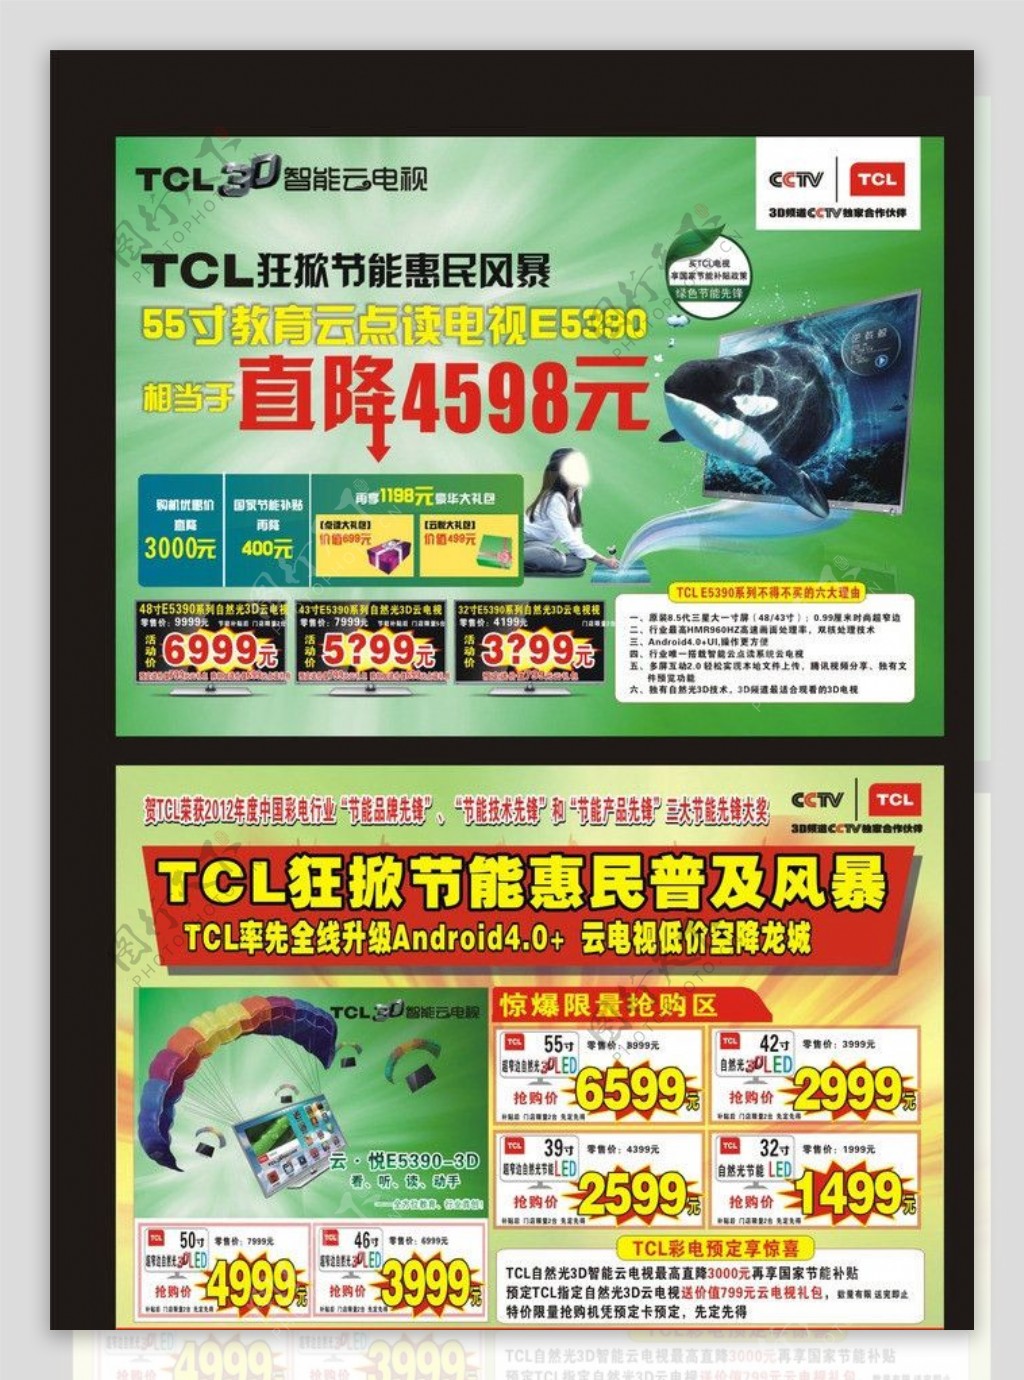 TCL王牌惠民风暴DM宣传单图片